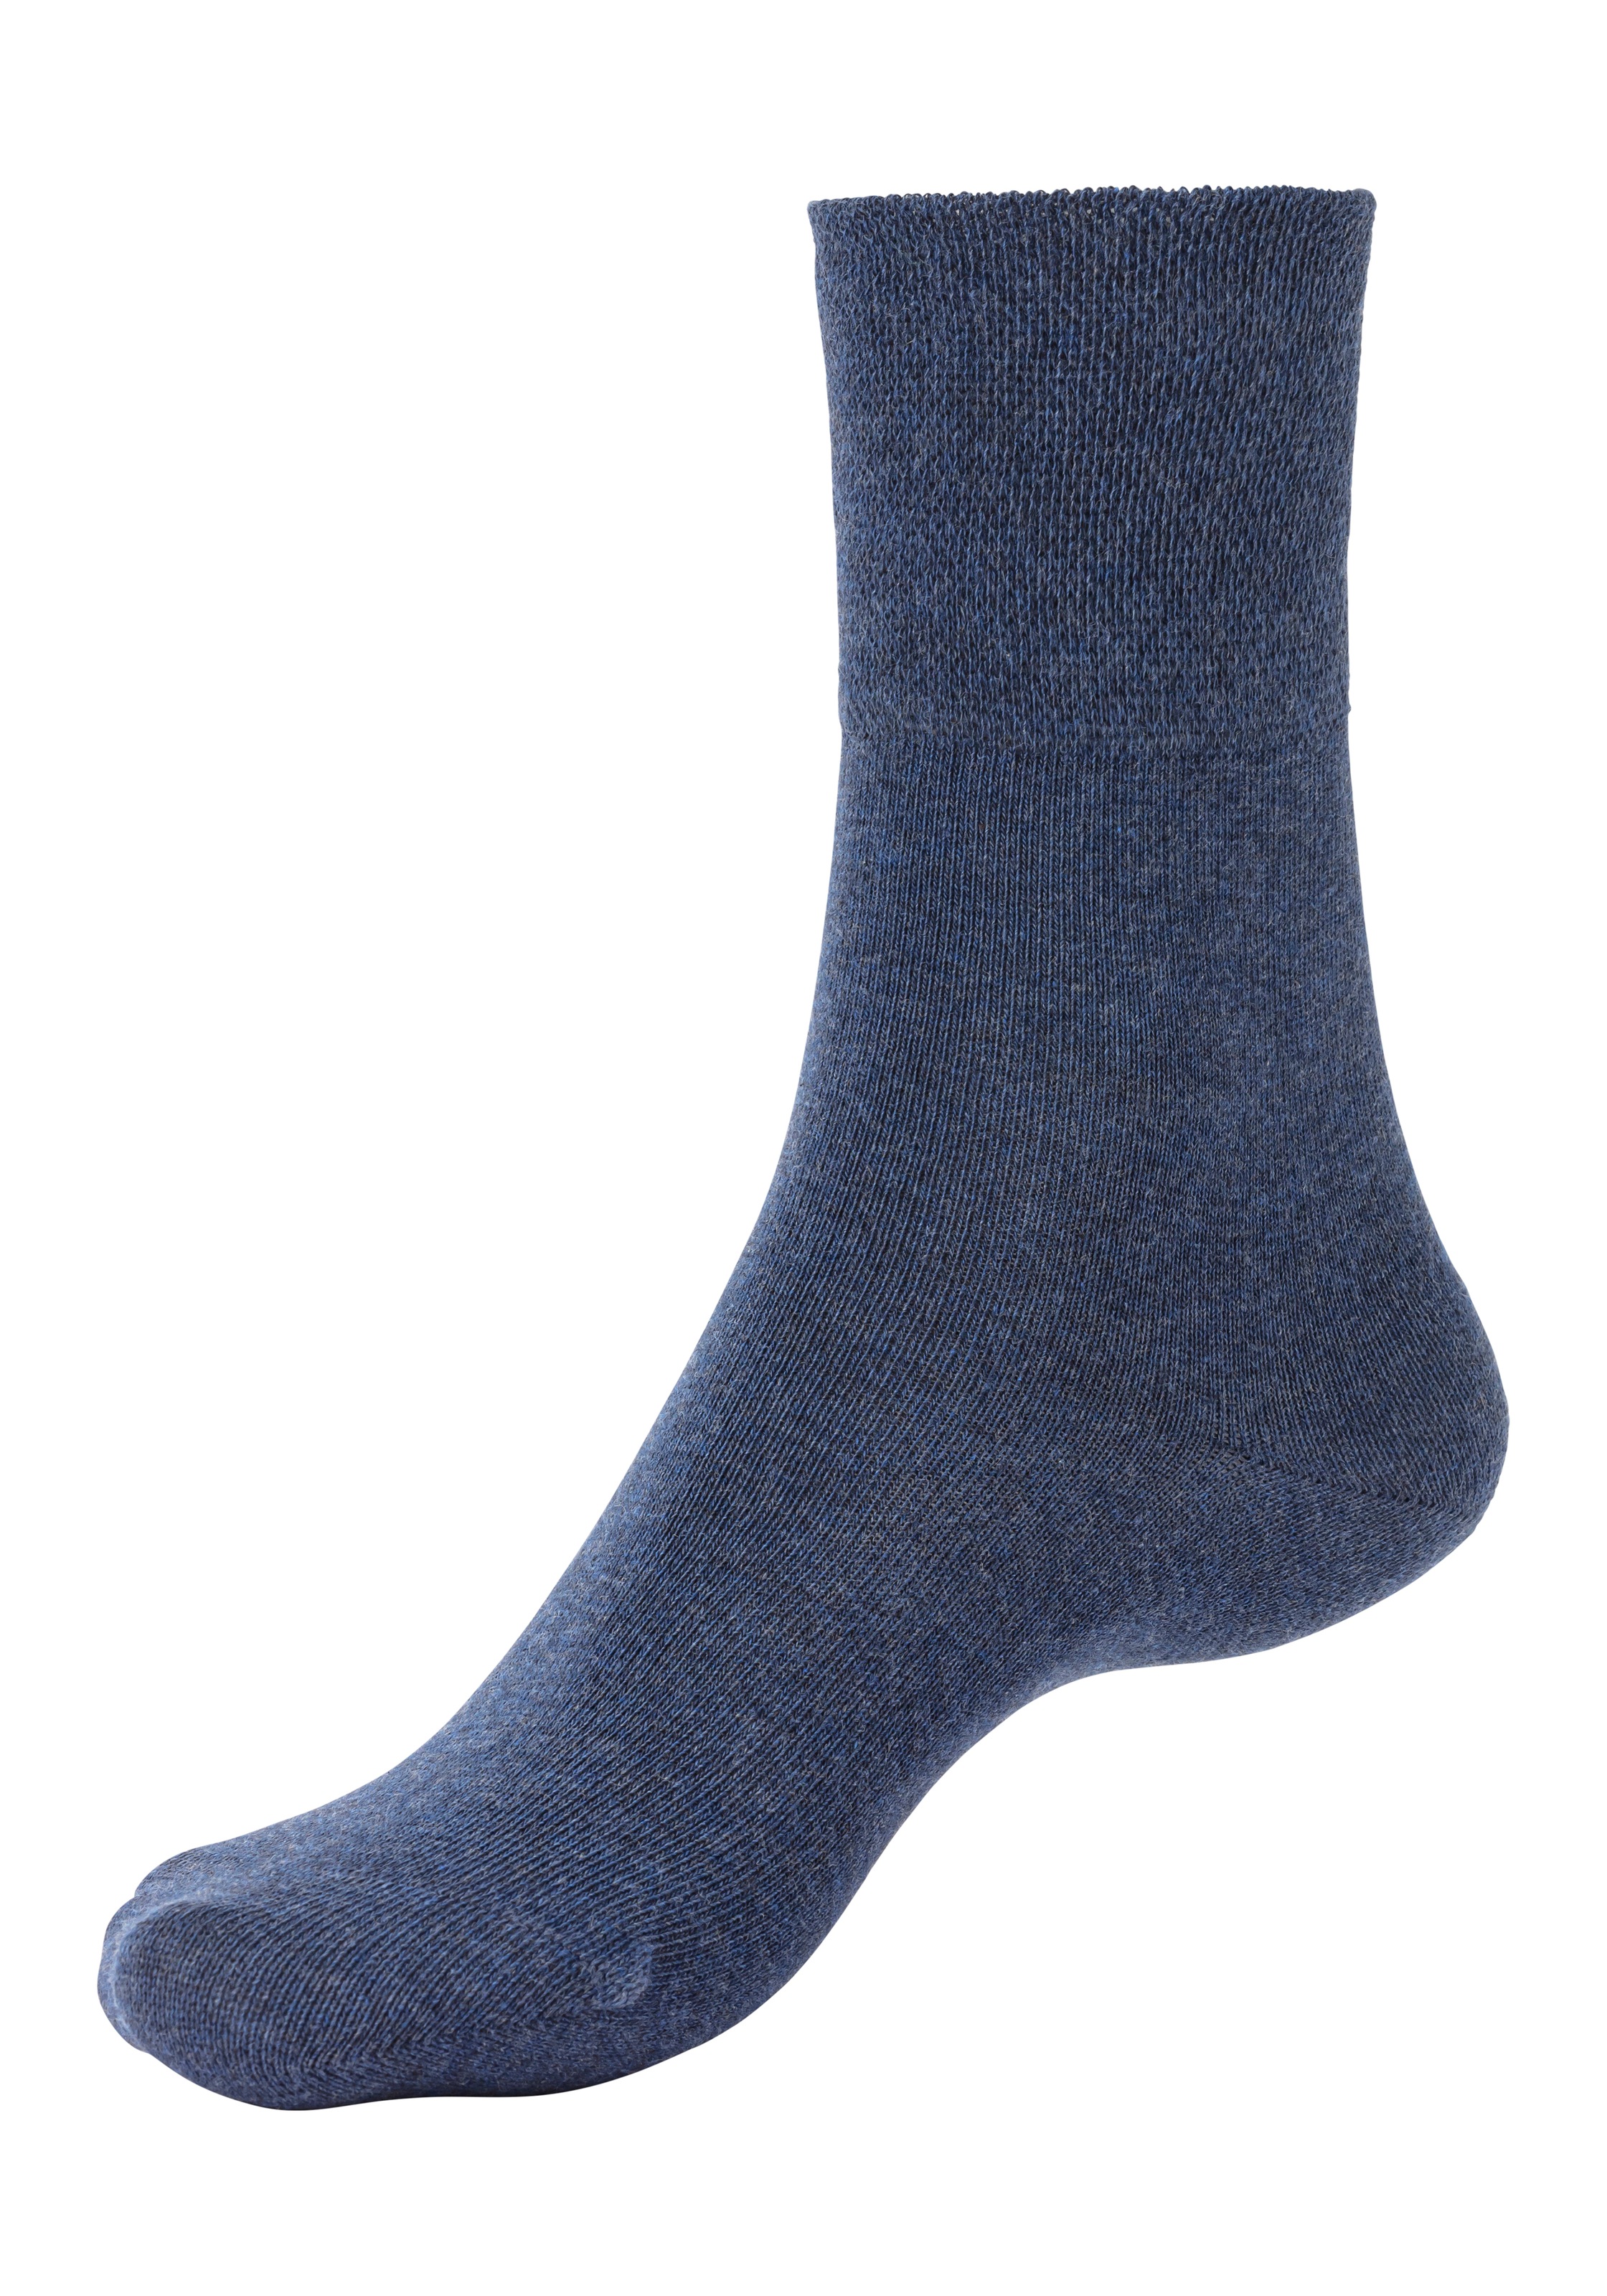 H.I.S Socken, (Packung, 3 Paar), mit Komfortbund auch für Diabetiker geeignet